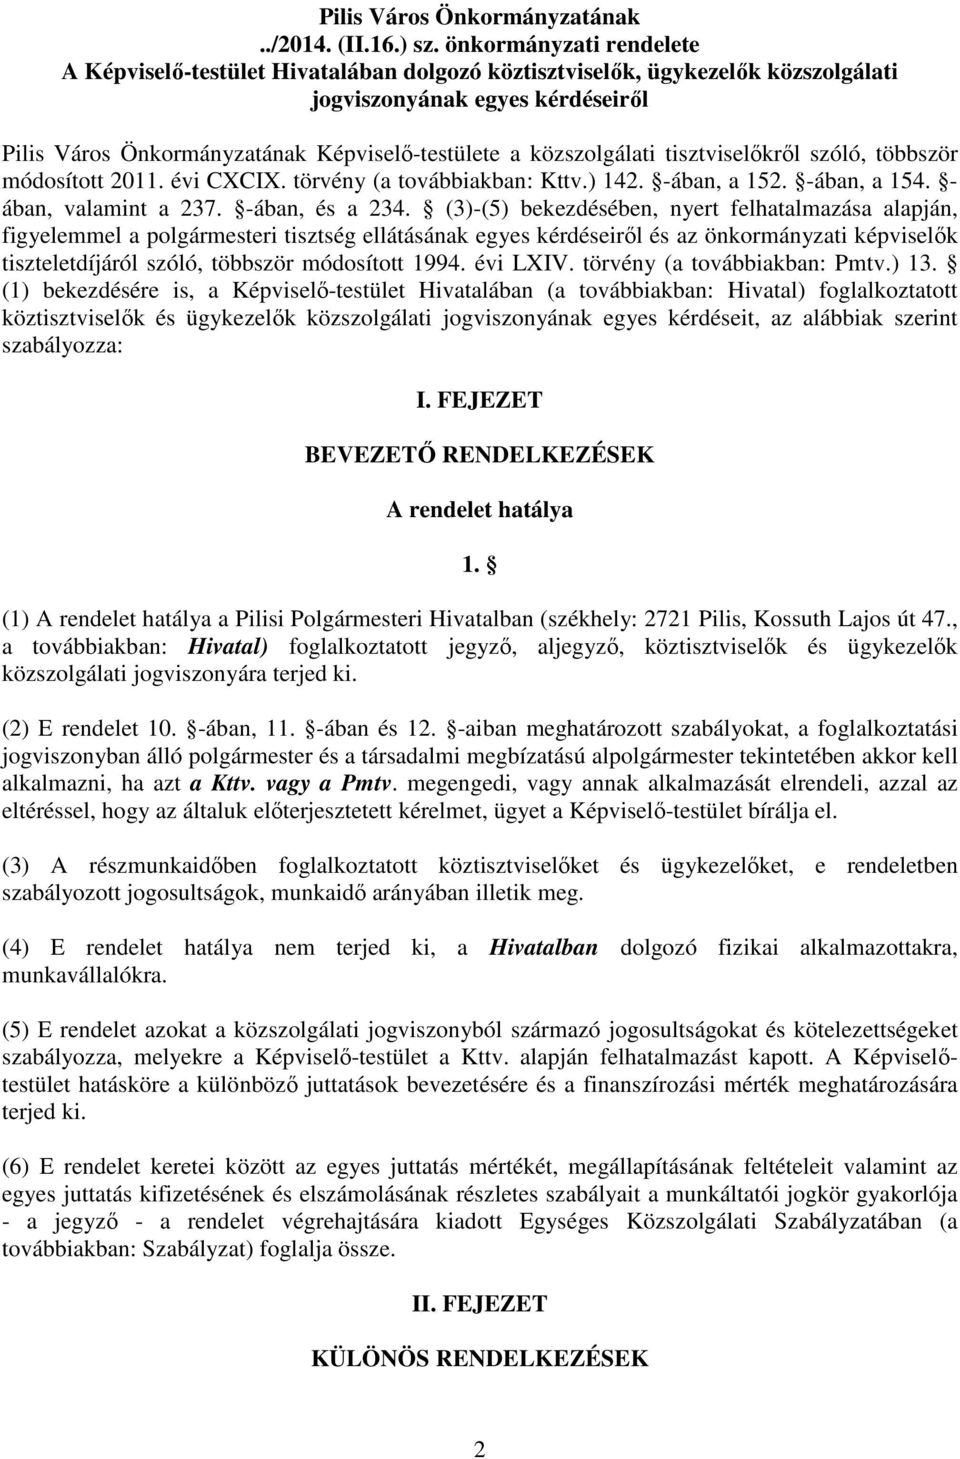 közszolgálati tisztviselıkrıl szóló, többször módosított 2011. évi CXCIX. törvény (a továbbiakban: Kttv.) 142. -ában, a 152. -ában, a 154. - ában, valamint a 237. -ában, és a 234.